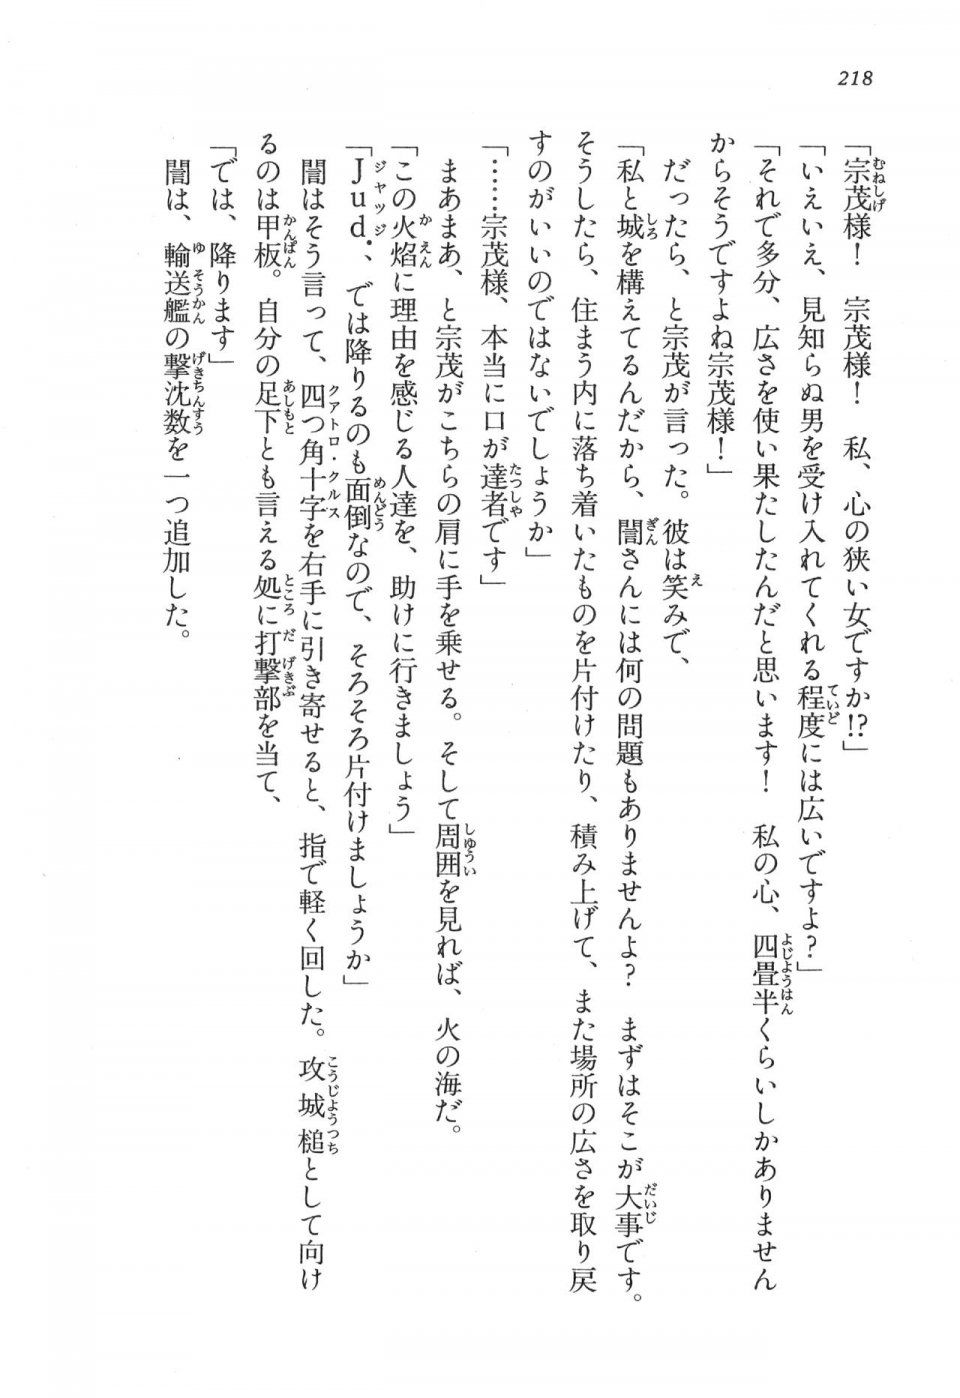 Kyoukai Senjou no Horizon LN Vol 17(7B) - Photo #218